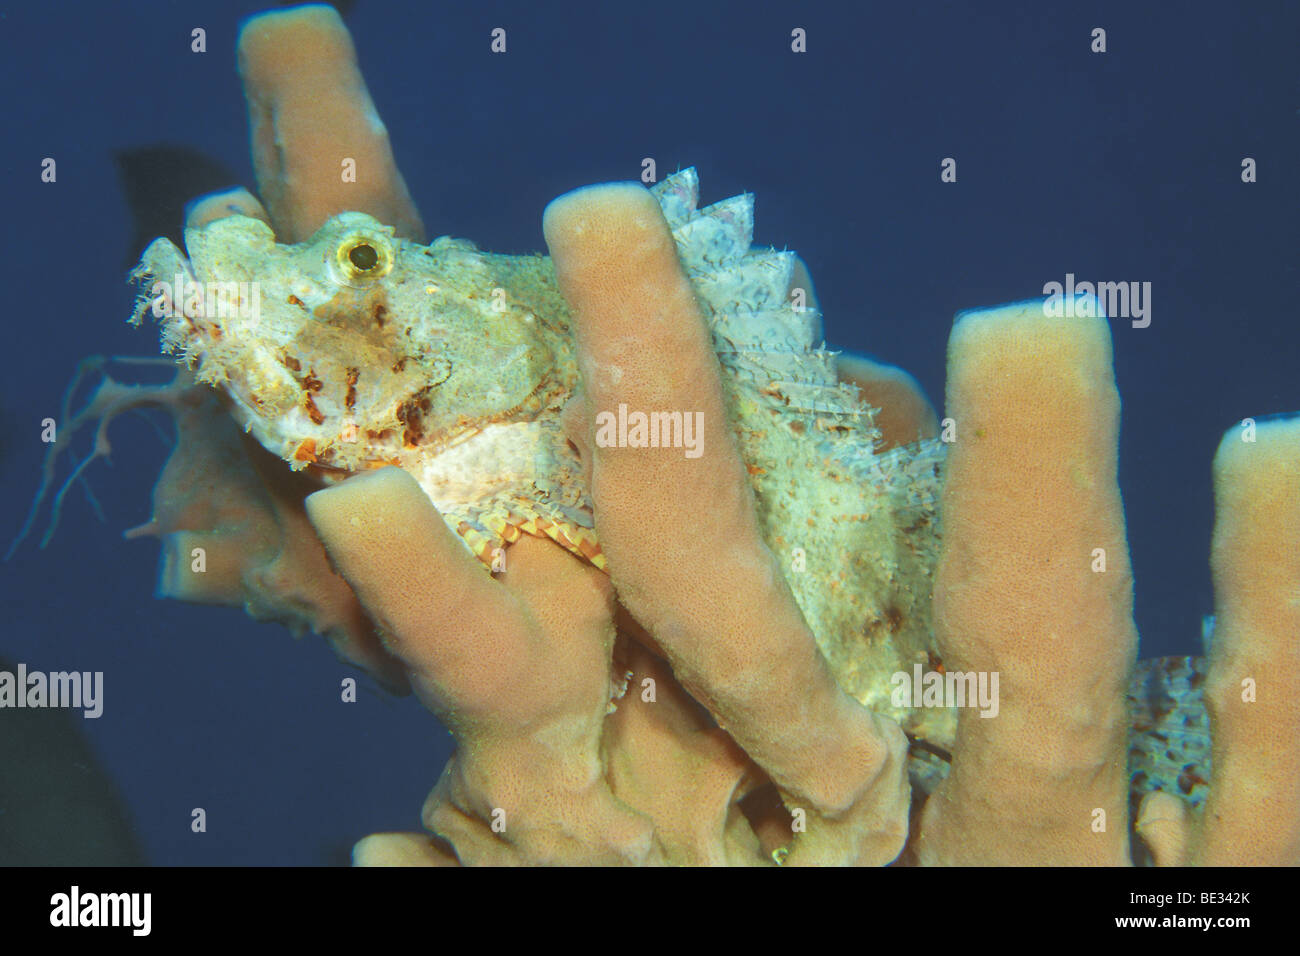 Tassled Scorpionfish, Scorpaenopsis oxycephalus, Bunaken, Sulawesi, Indonesia Stock Photo